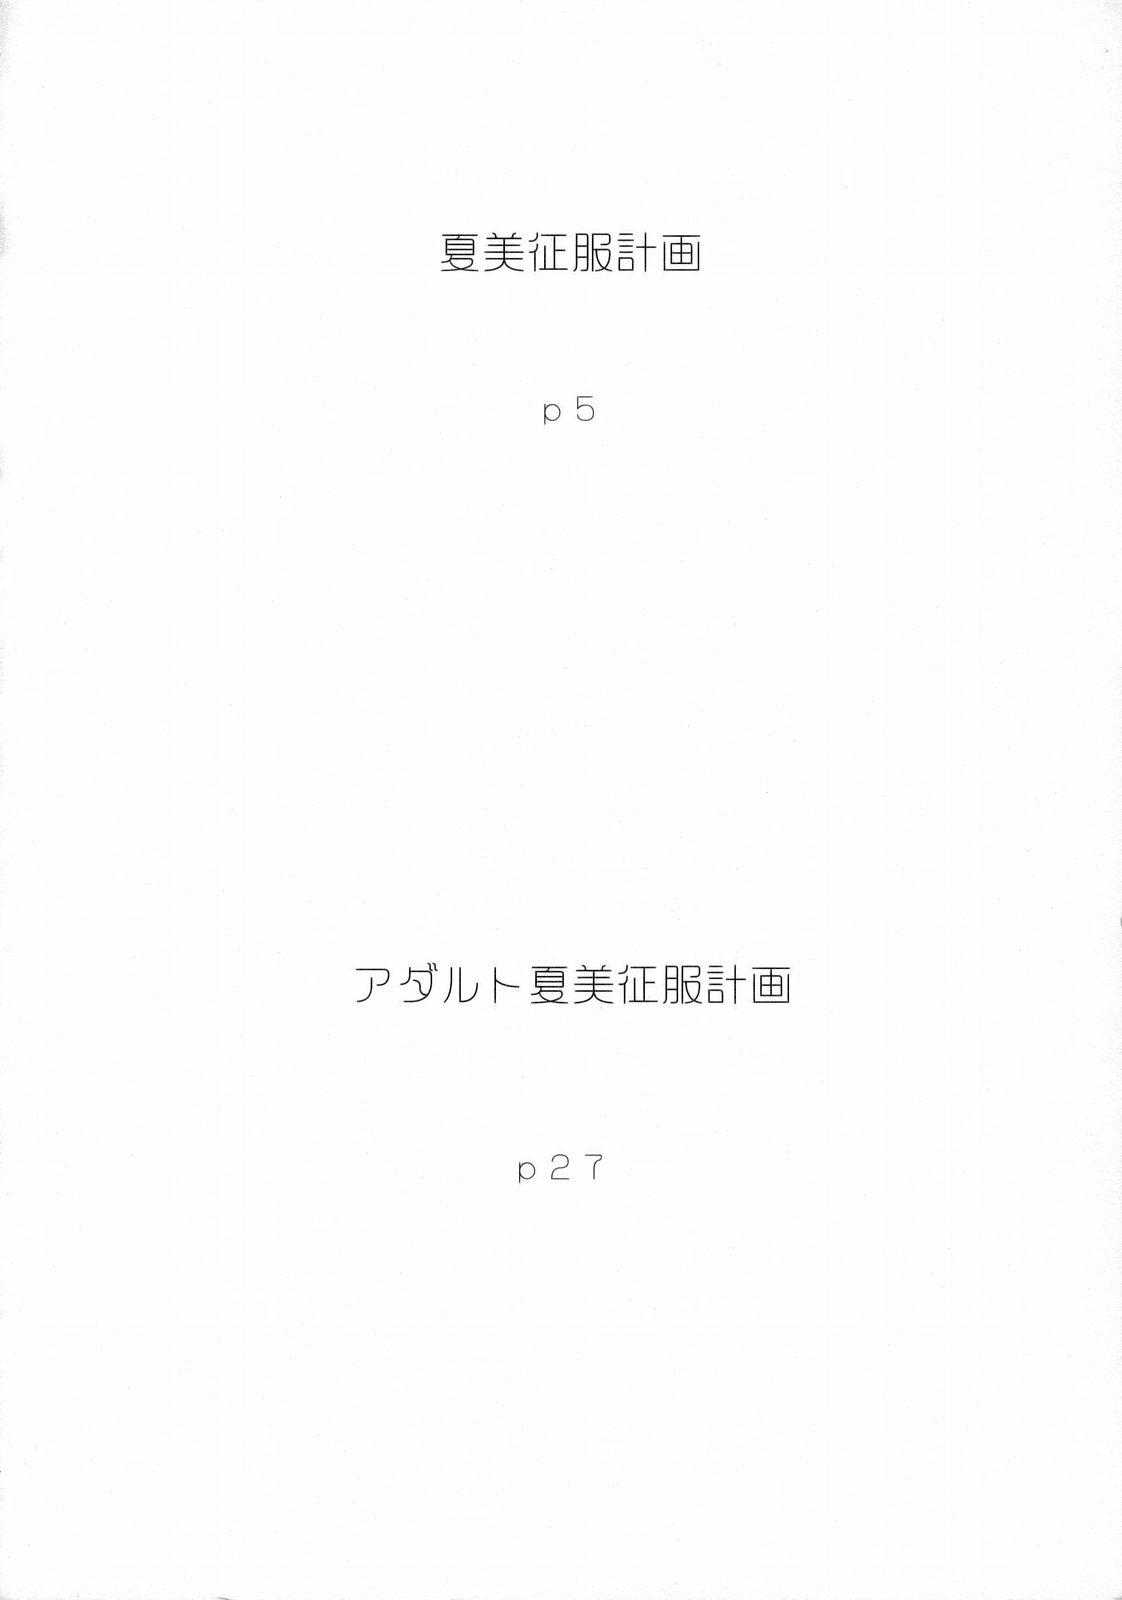 Roughsex Natsumi Seifuku Keikaku | Natsumi Uniform Plan - Keroro gunsou Sucking - Page 3